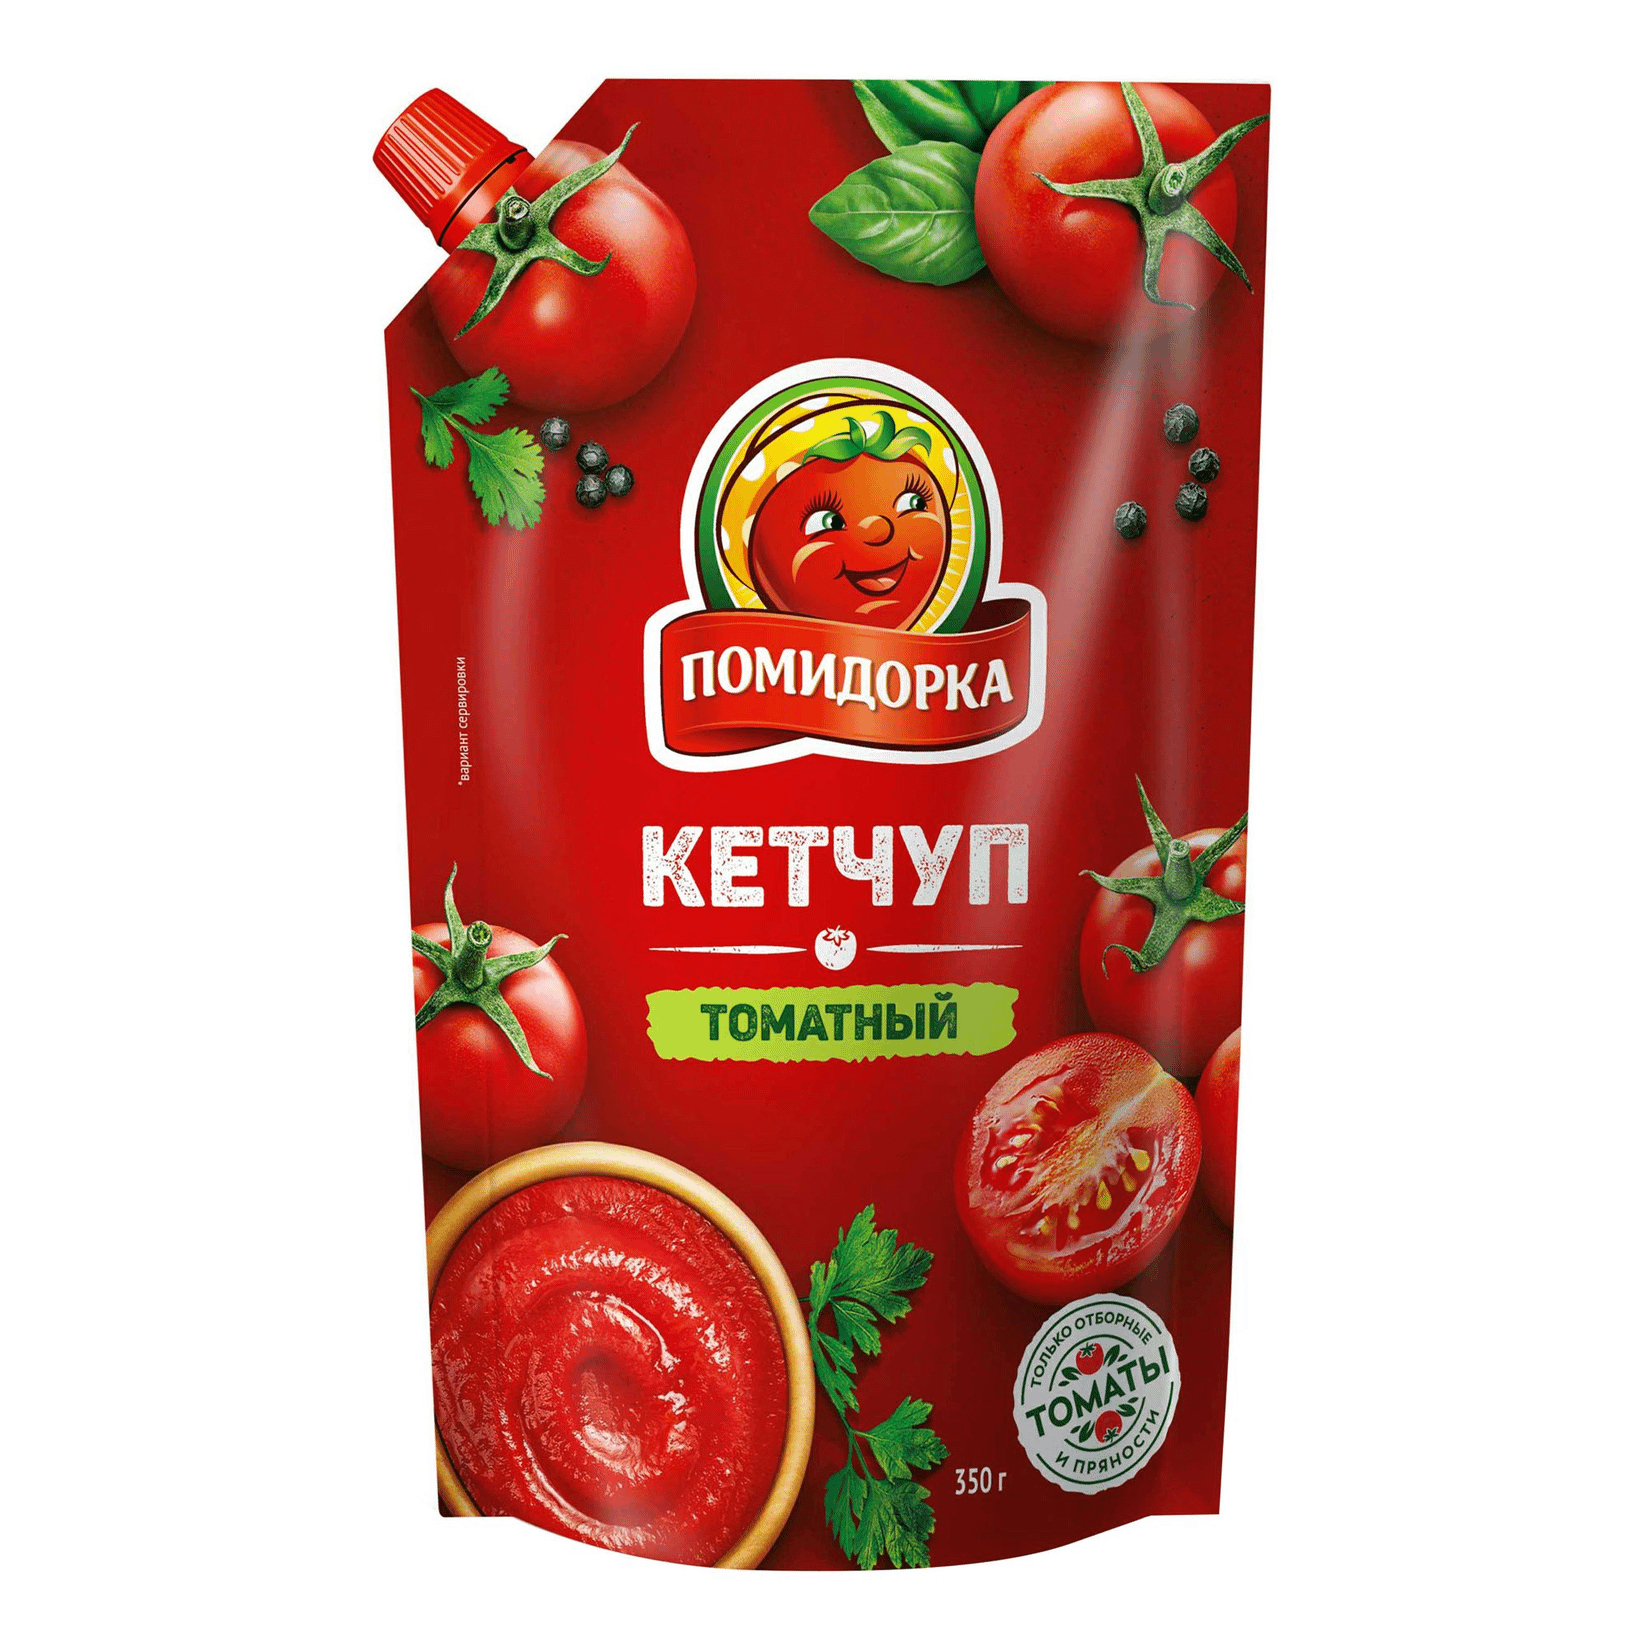 Кетчуп Помидорка Томатный 350 г кетчуп томатный mr ricco pomodoro speciale 350 г